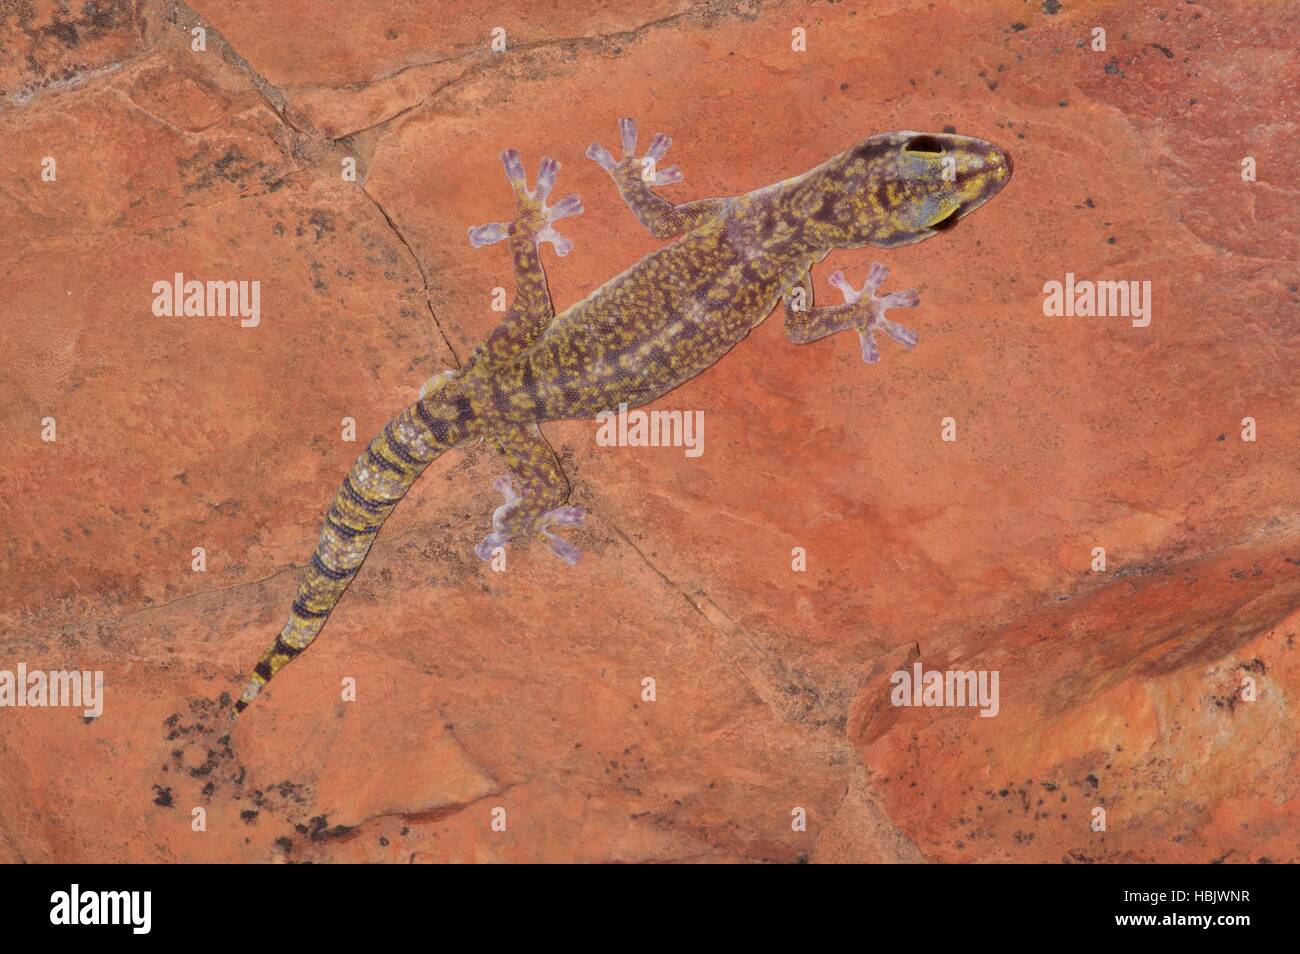 Un velours marbré Gecko (Oedura marmorata) accroché à une paroi rocheuse verticale rouge Gorge Ormiston, Territoire du Nord, Australie Banque D'Images